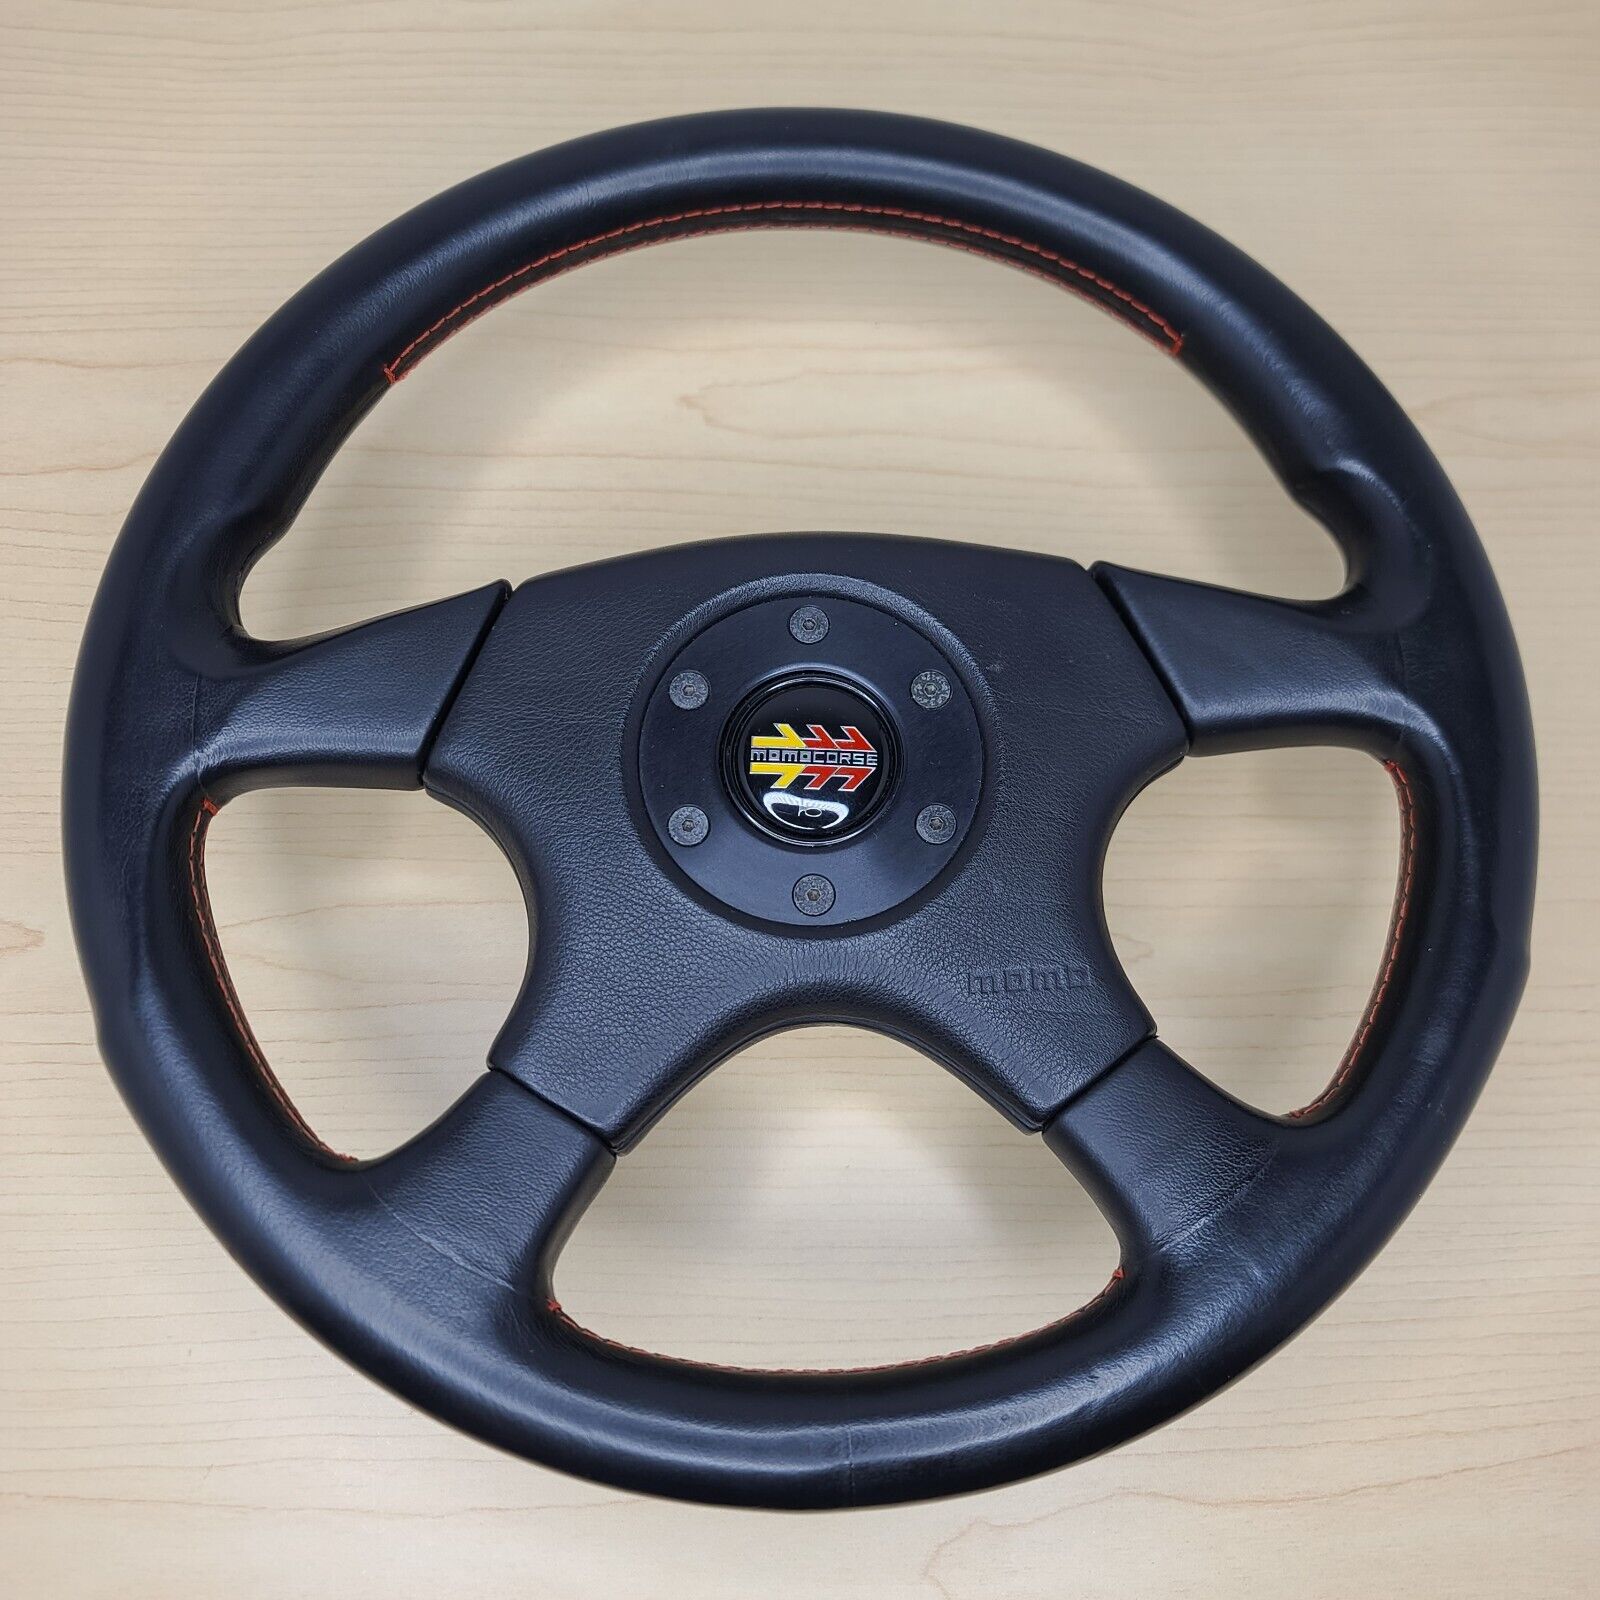 Momo Speed 4 racing steering wheel like Ghibli Olympic rare vintage JDM #111